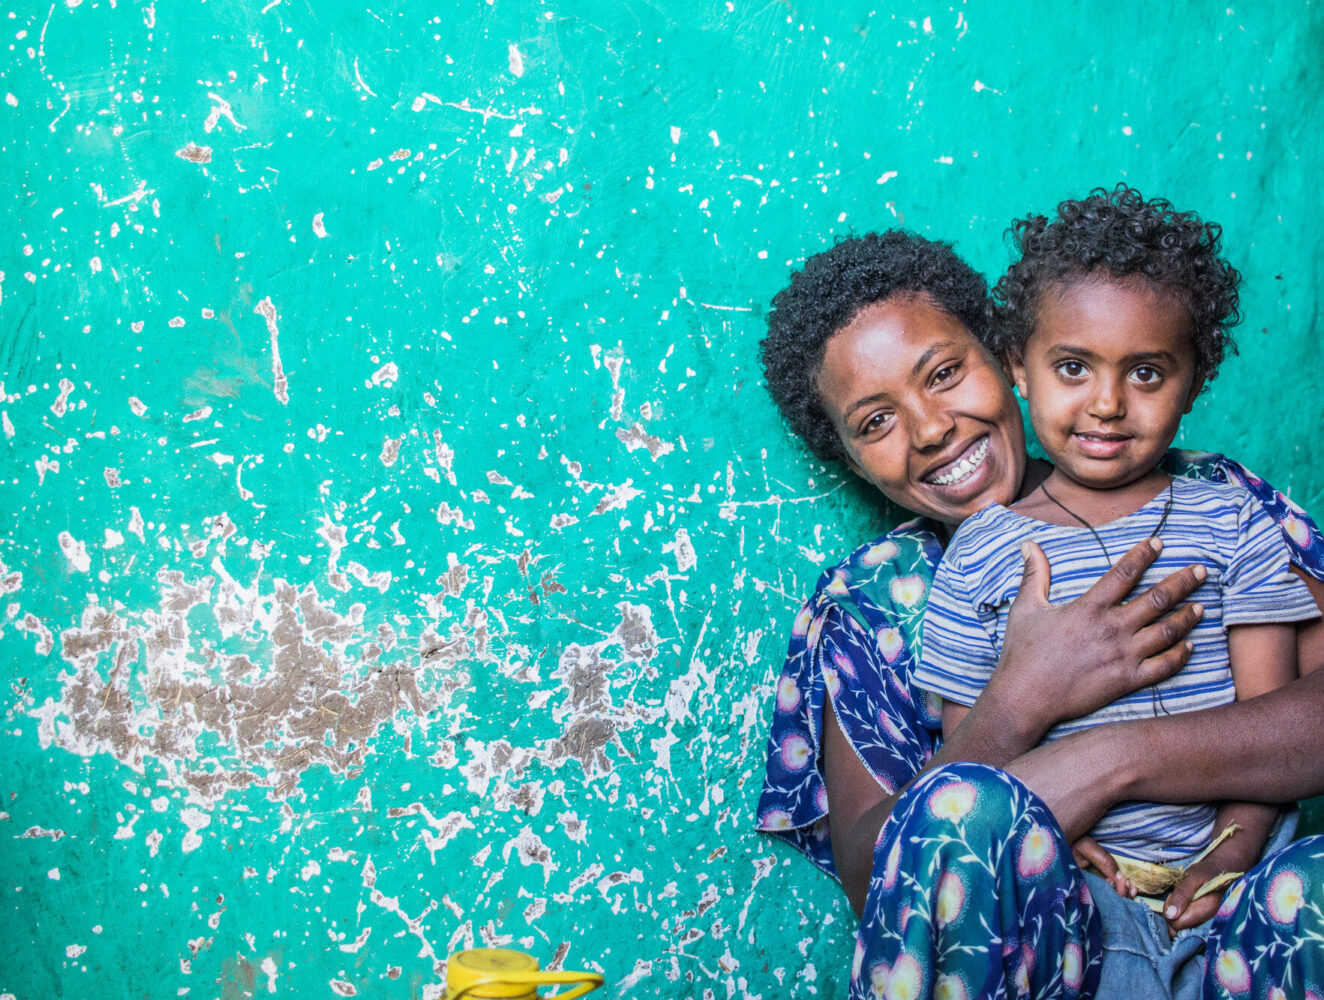 L’association humanitaire CARE lutte contre l’extrême pauvreté en Ethiopie